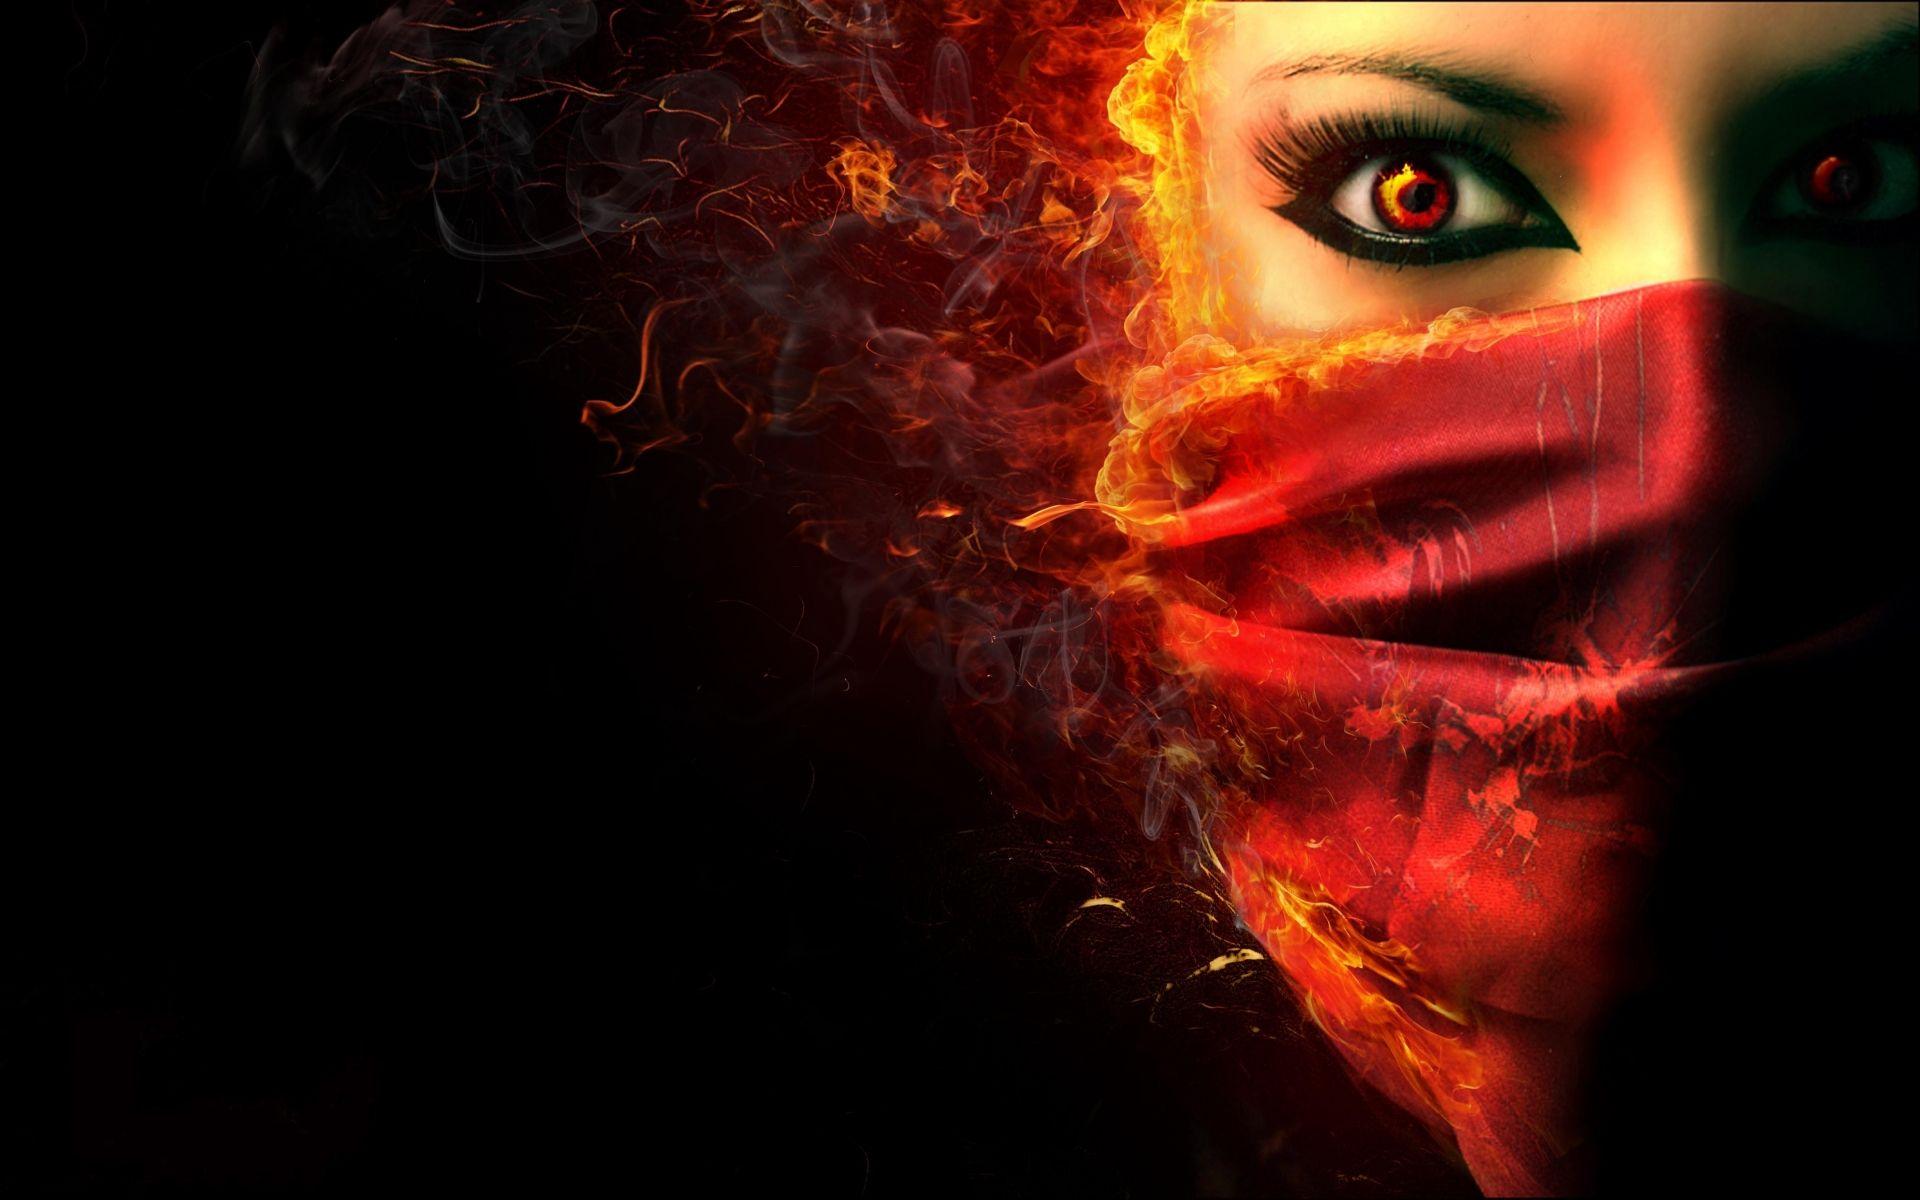 fantasy dark horror face demon evil women. Eyes wallpaper, Dark evil, Fire art